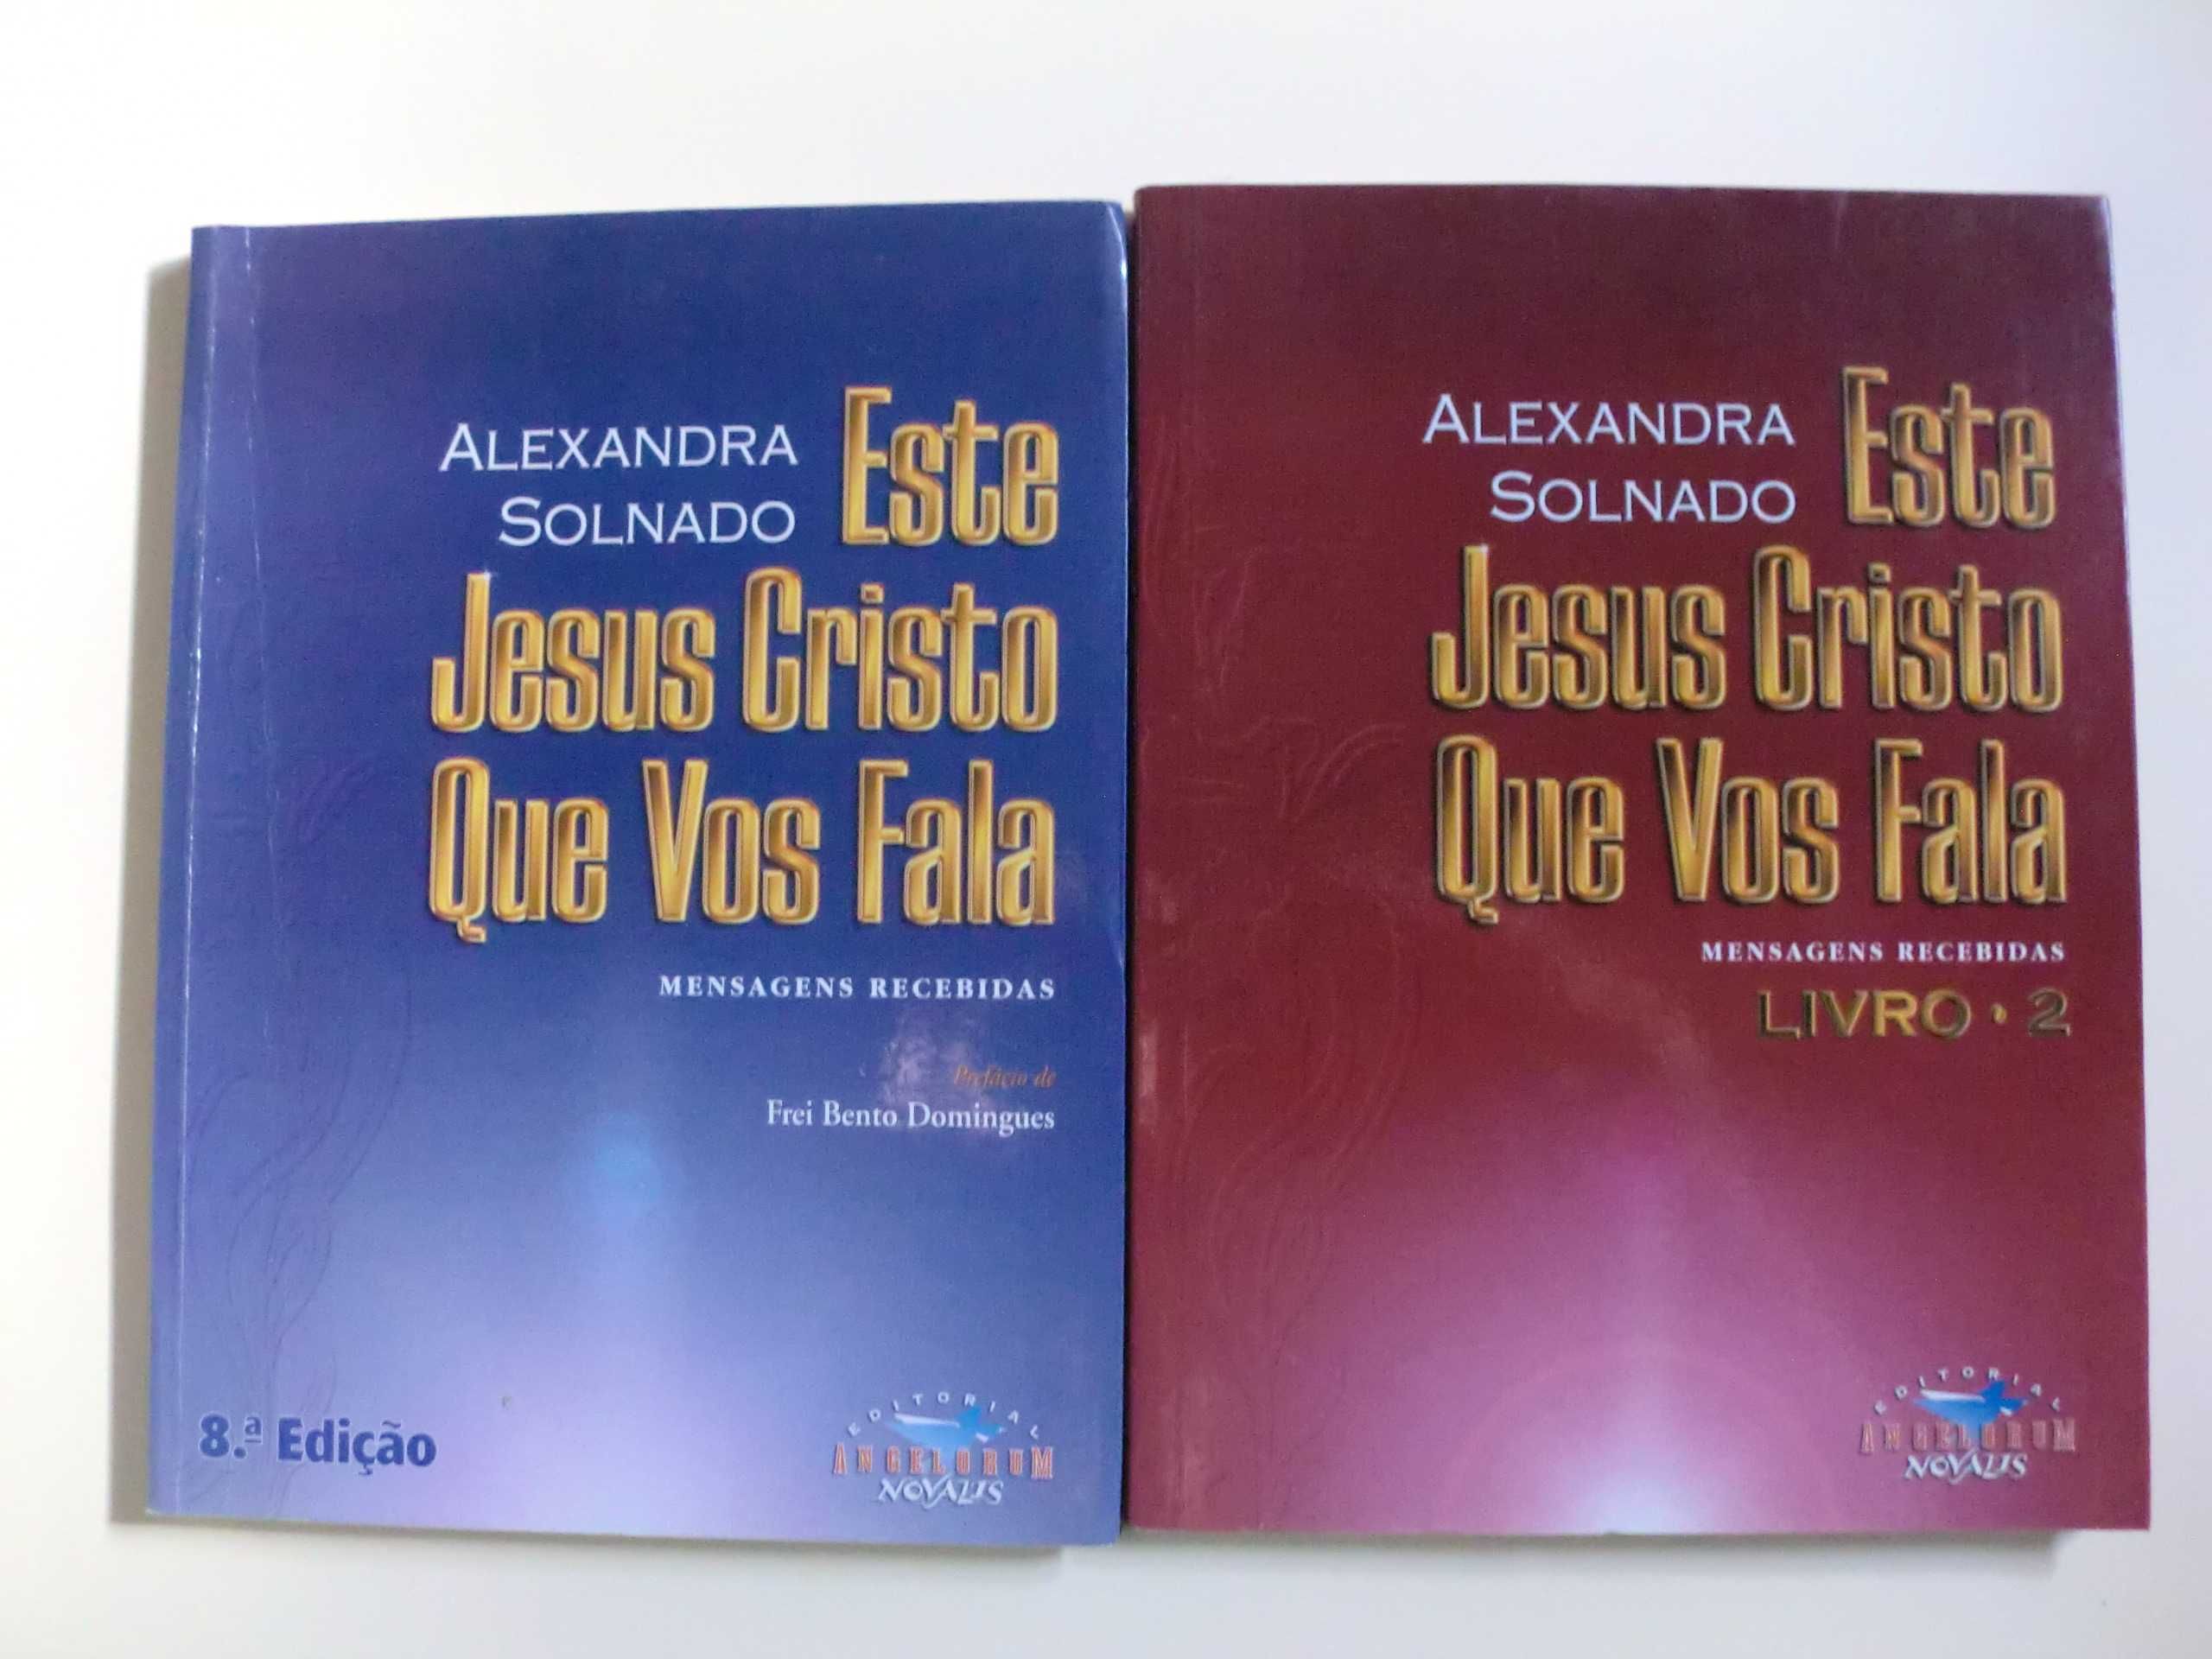 Este Jesus Cristo Que Vos Fala
de Alexandra Solnado

Livro 1 e 2